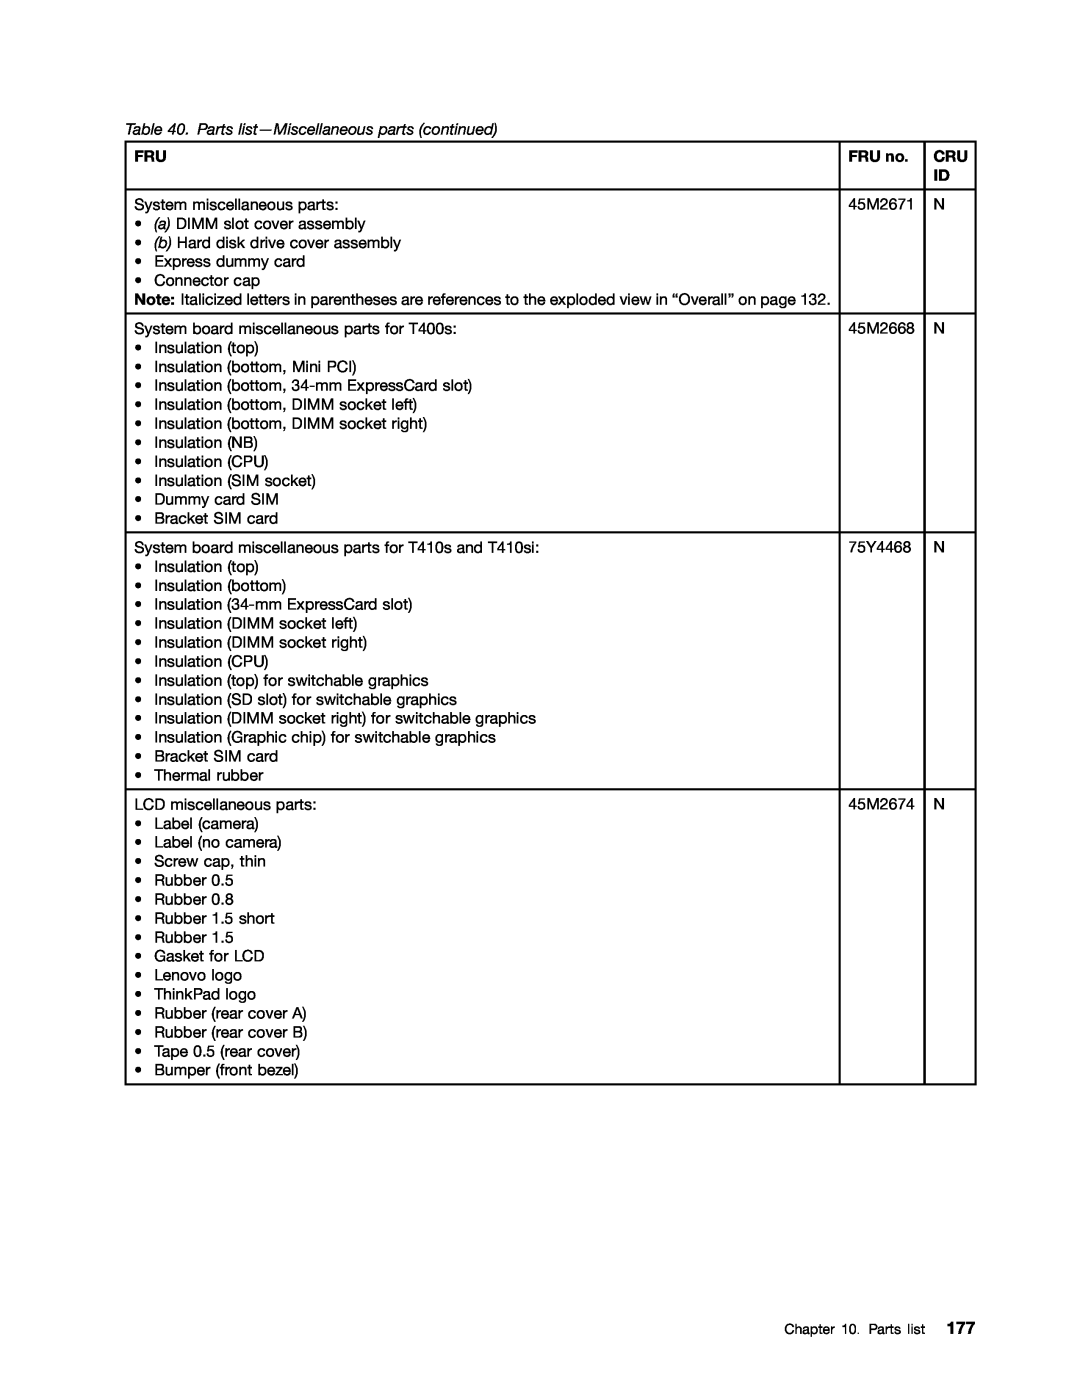 IBM T400S, T410SI manual Parts list-Miscellaneous parts continued, FRU no 